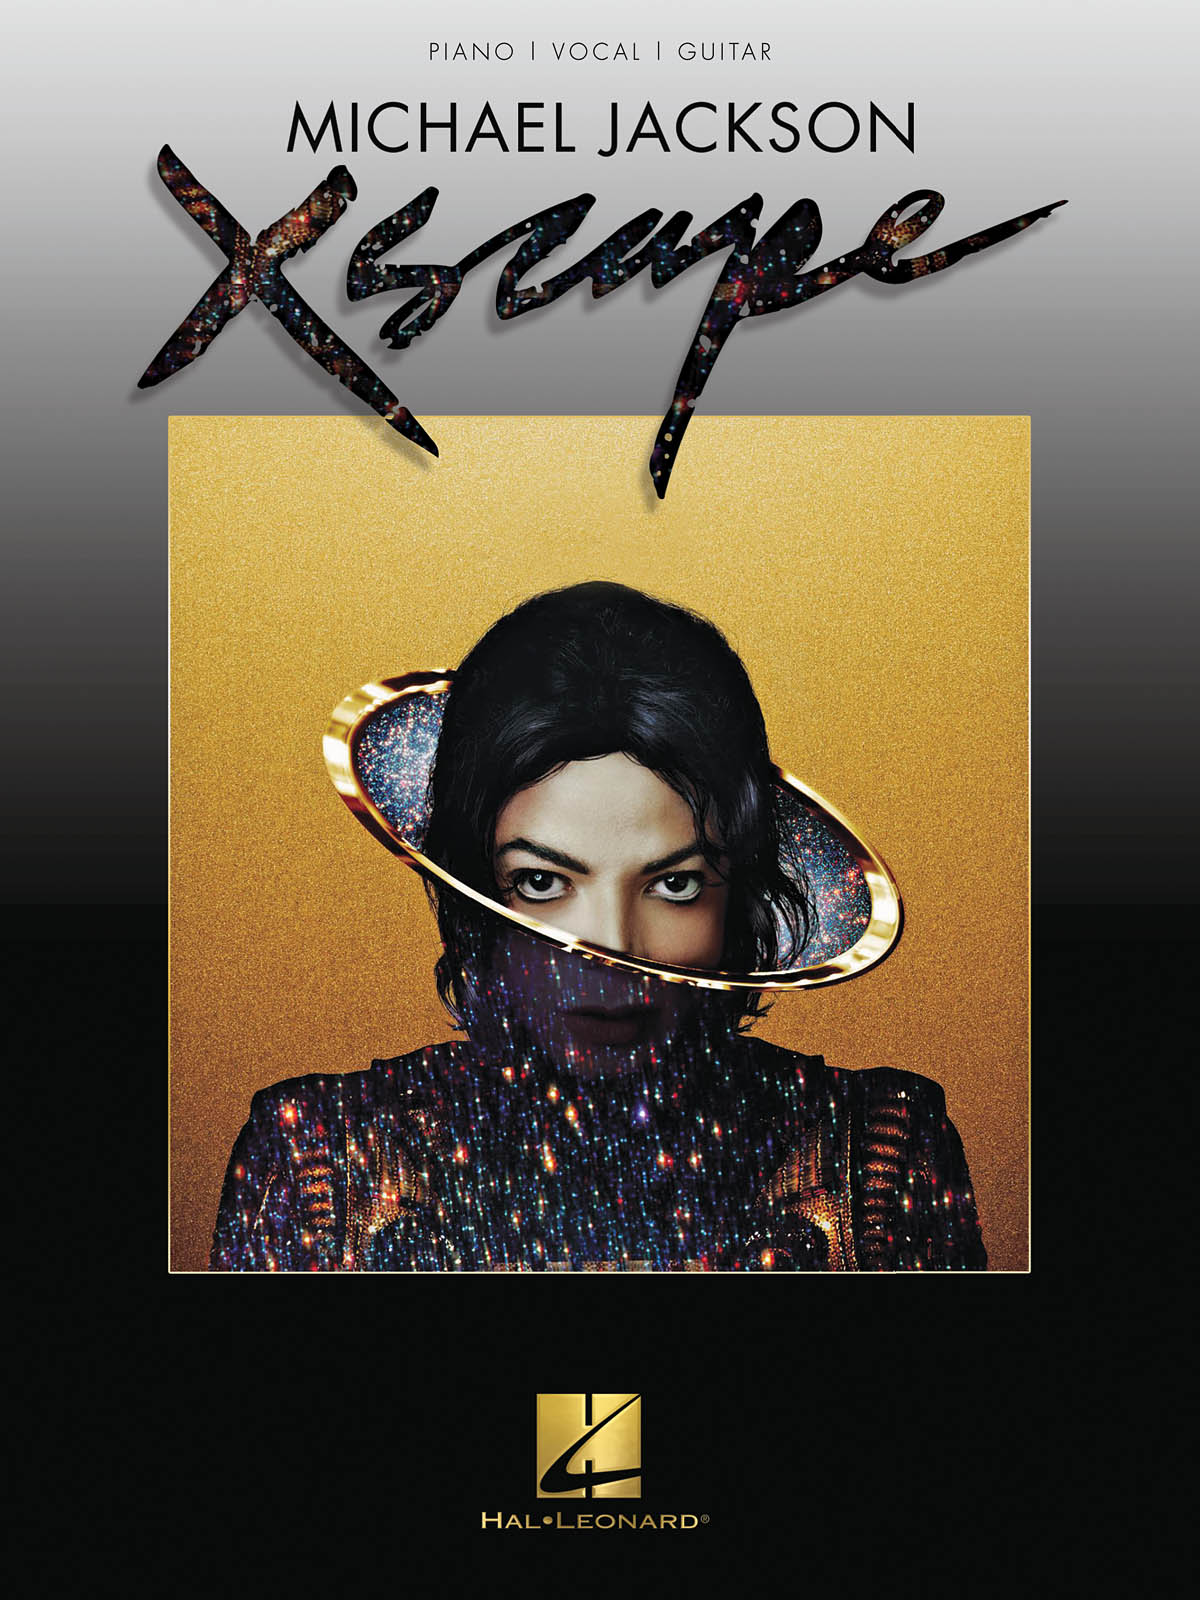 Michael Jackson: Michael Jackson - Xscape: Piano  Vocal and Guitar: Album